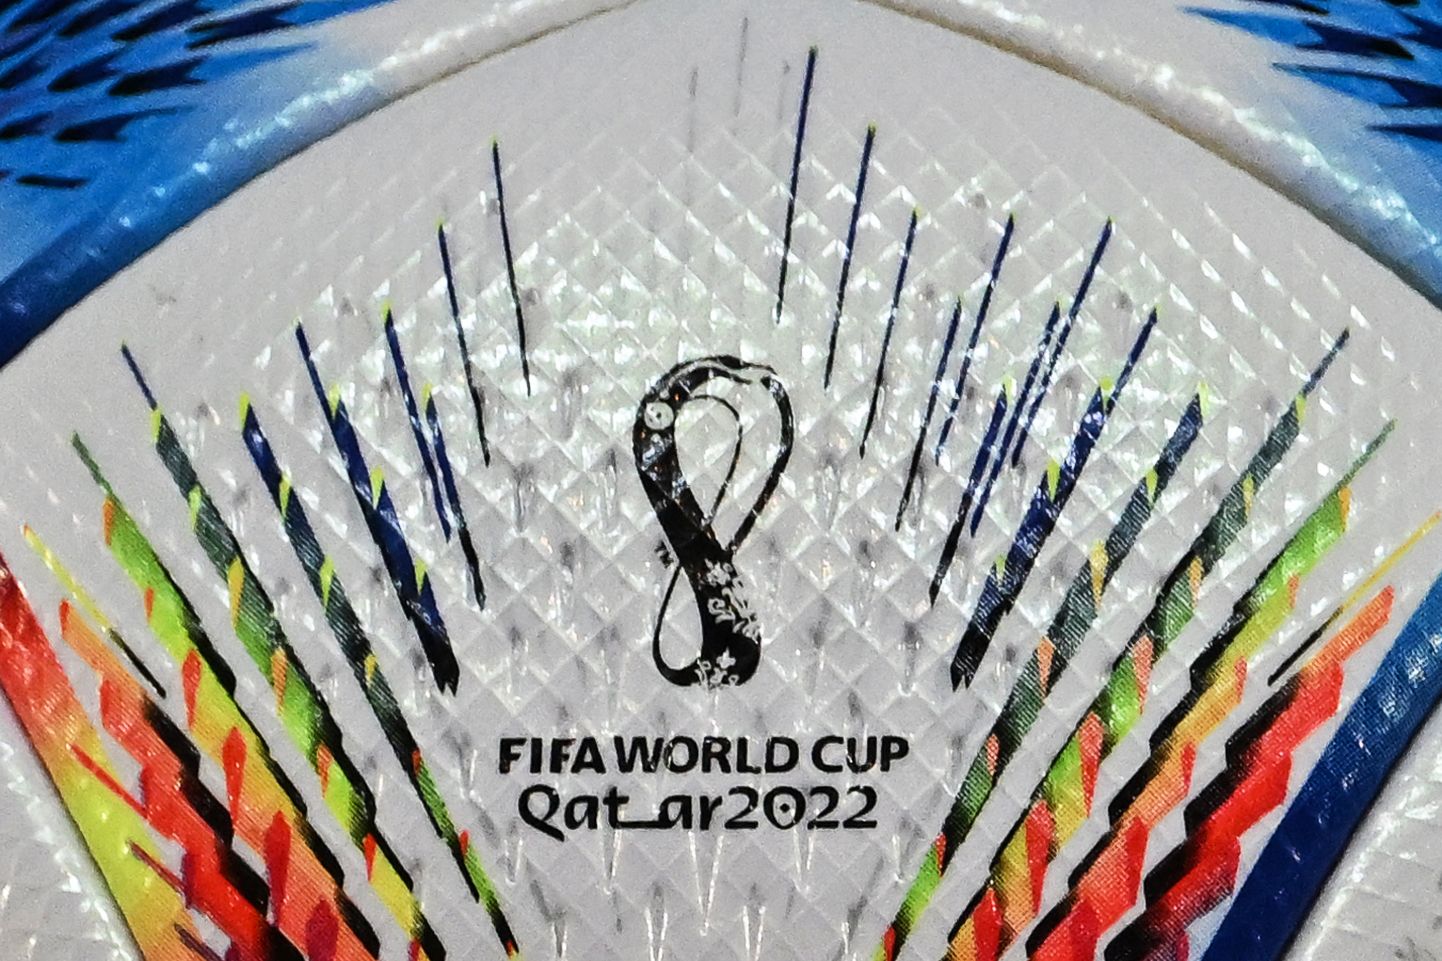 Katari jalgpalli maailmameistrivõistluste 2022 logo ametlikult mängupallil